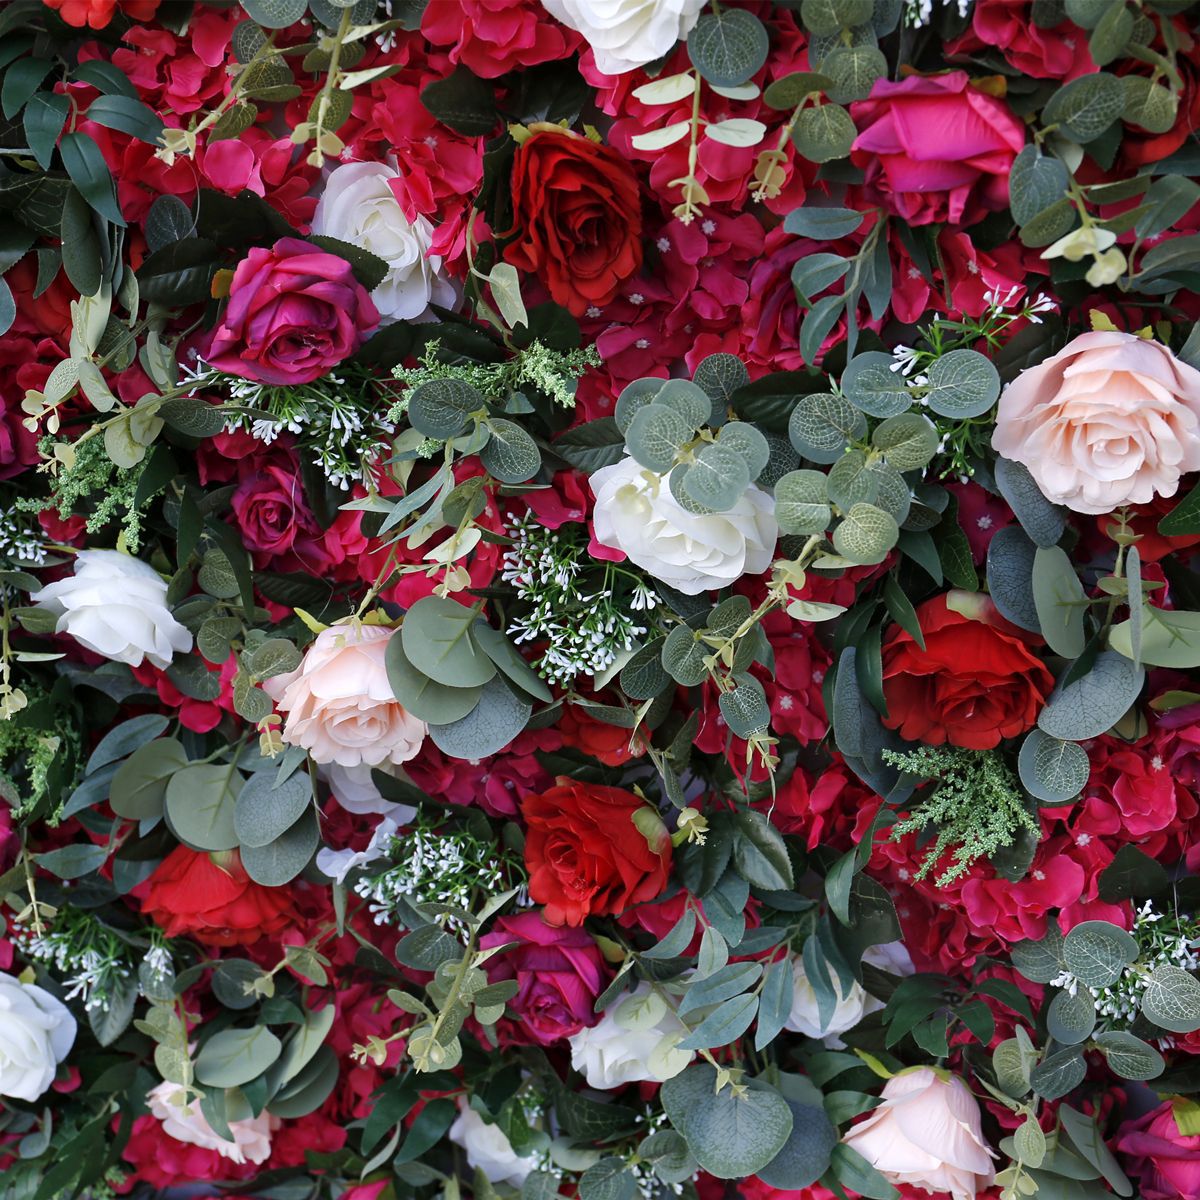 Forest Series 5D-Stoffboden, Hochzeitshintergrund, Blumenwandsimulation, Rosenarrangement